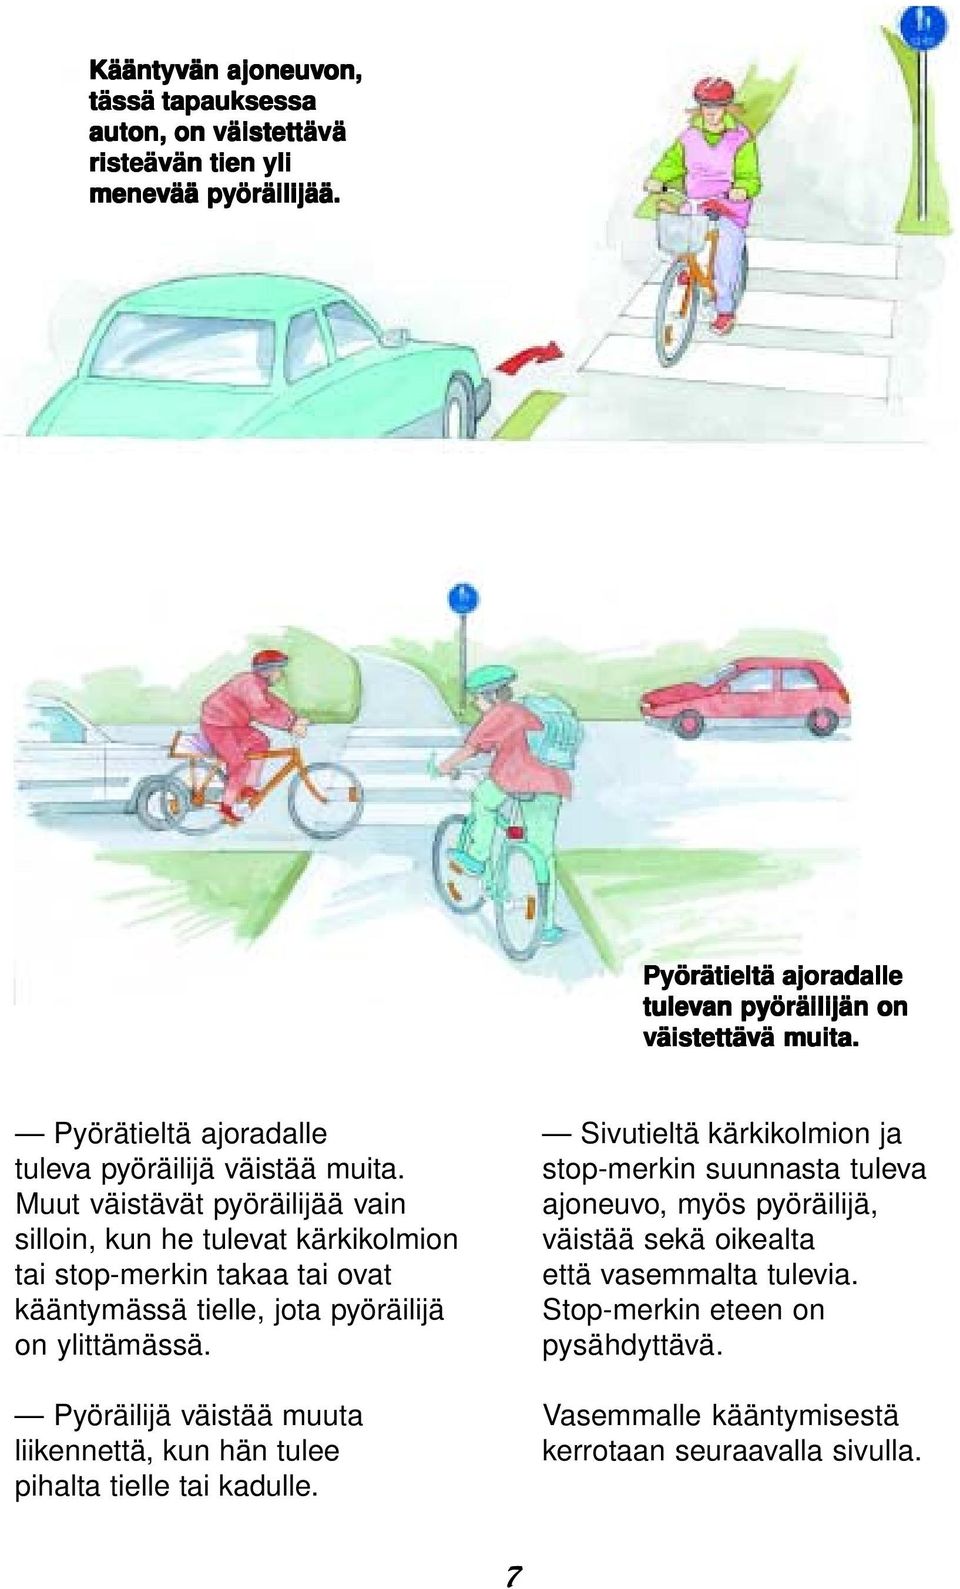 Muut väistävät pyöräilijää vain silloin, kun he tulevat kärkikolmion tai stop-merkin takaa tai ovat kääntymässä tielle, jota pyöräilijä on ylittämässä.